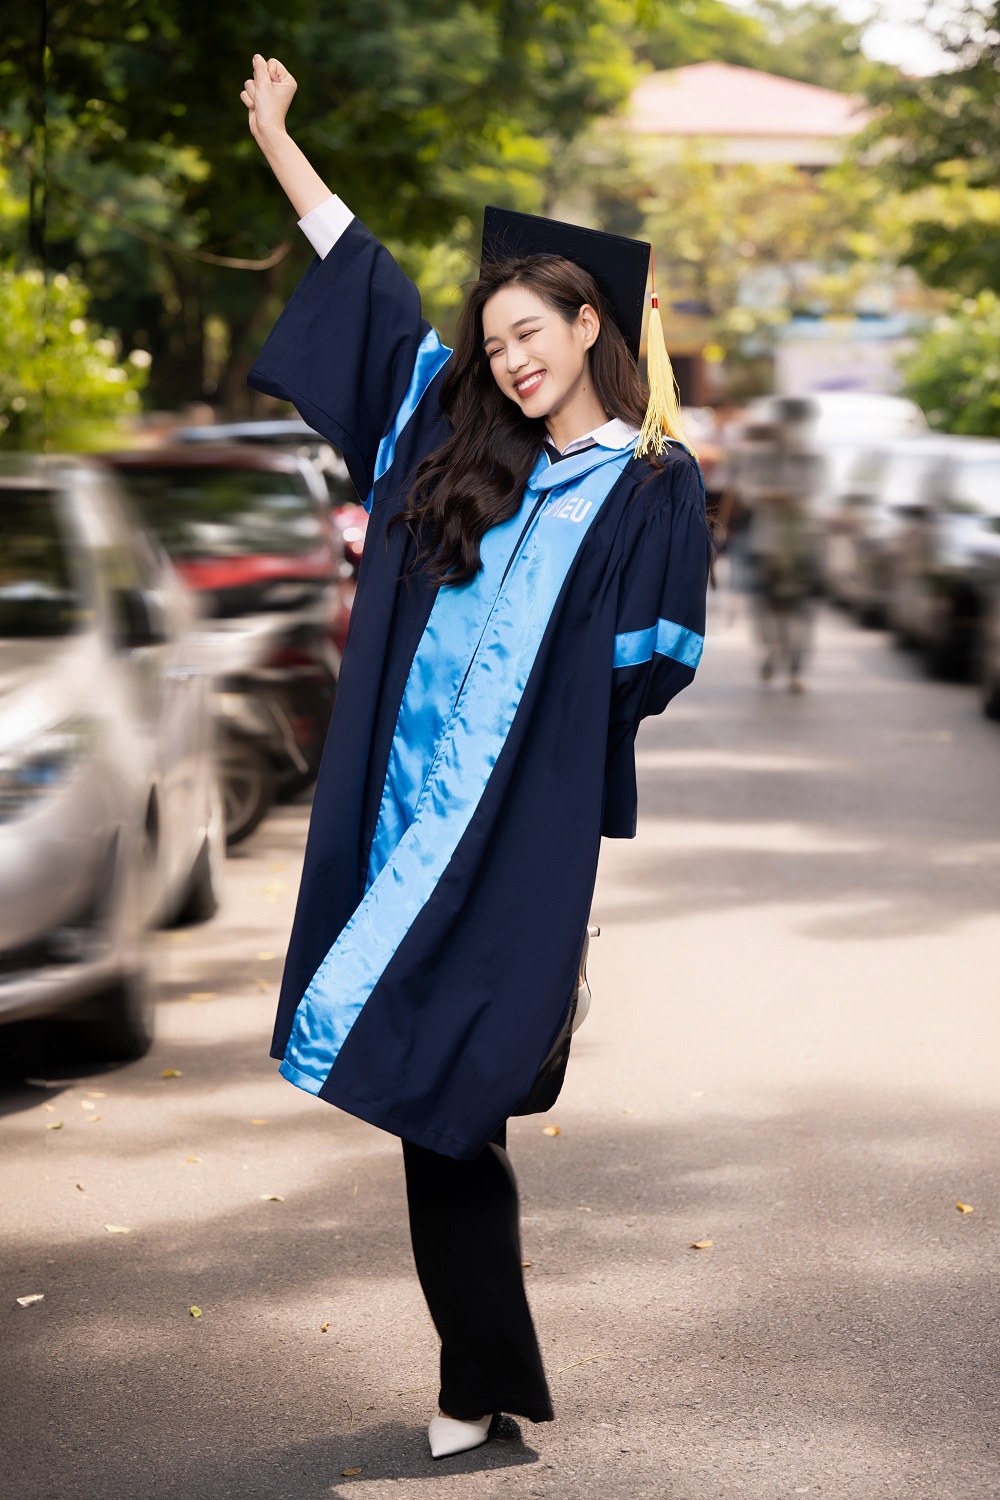 Tin tức giải trí - Hoa hậu Đỗ Hà rạng rỡ trong ngày tốt nghiệp, hào hứng chuẩn bị làm CEO ngành làm đẹp (Hình 12).